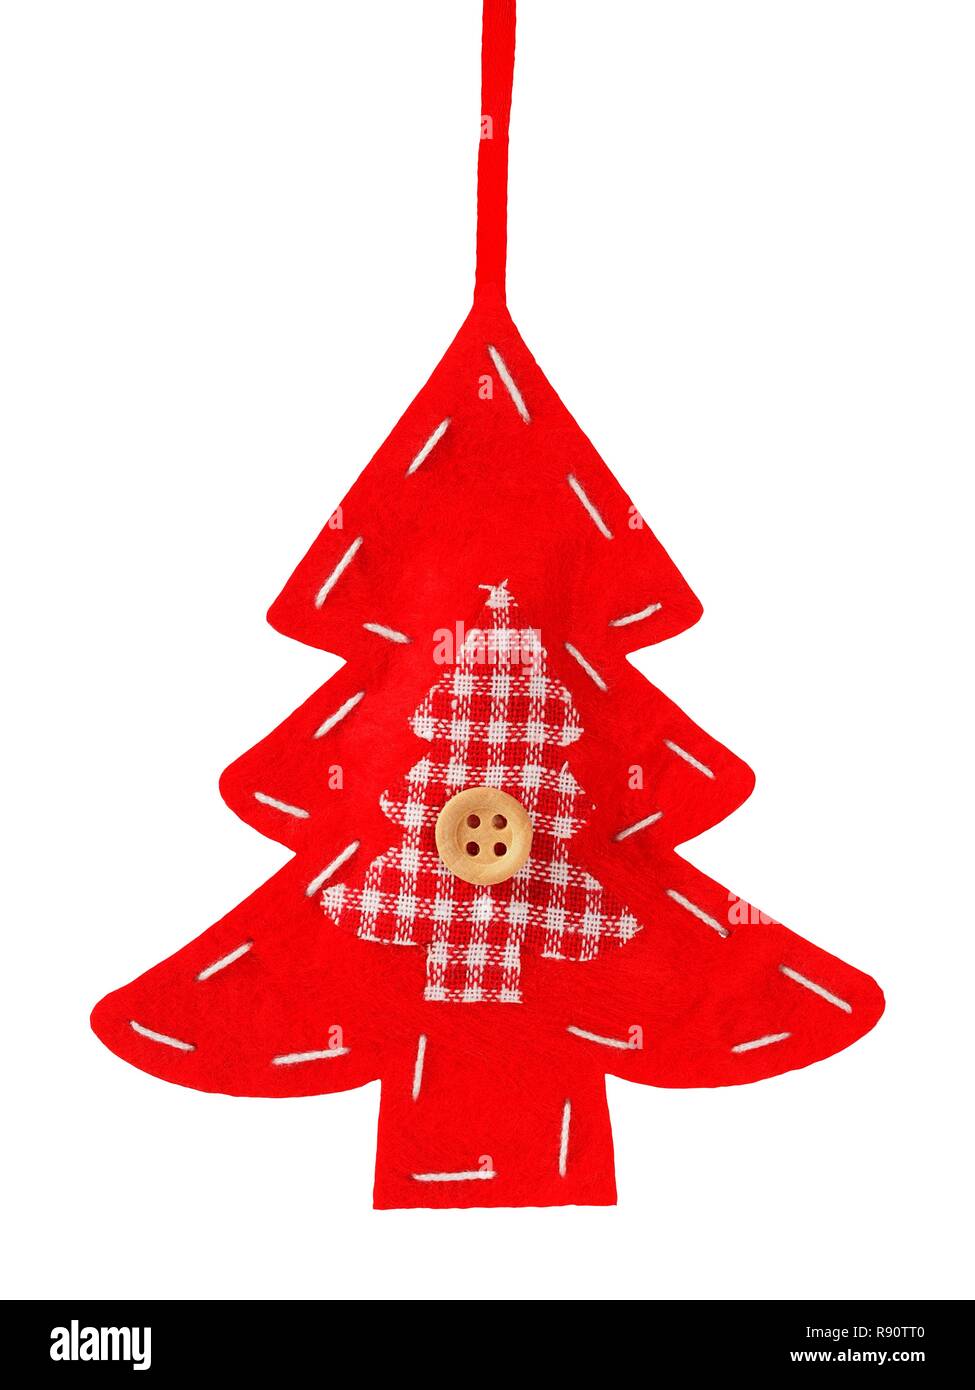 Christmas tree decoration isolated on white background Stock Photo